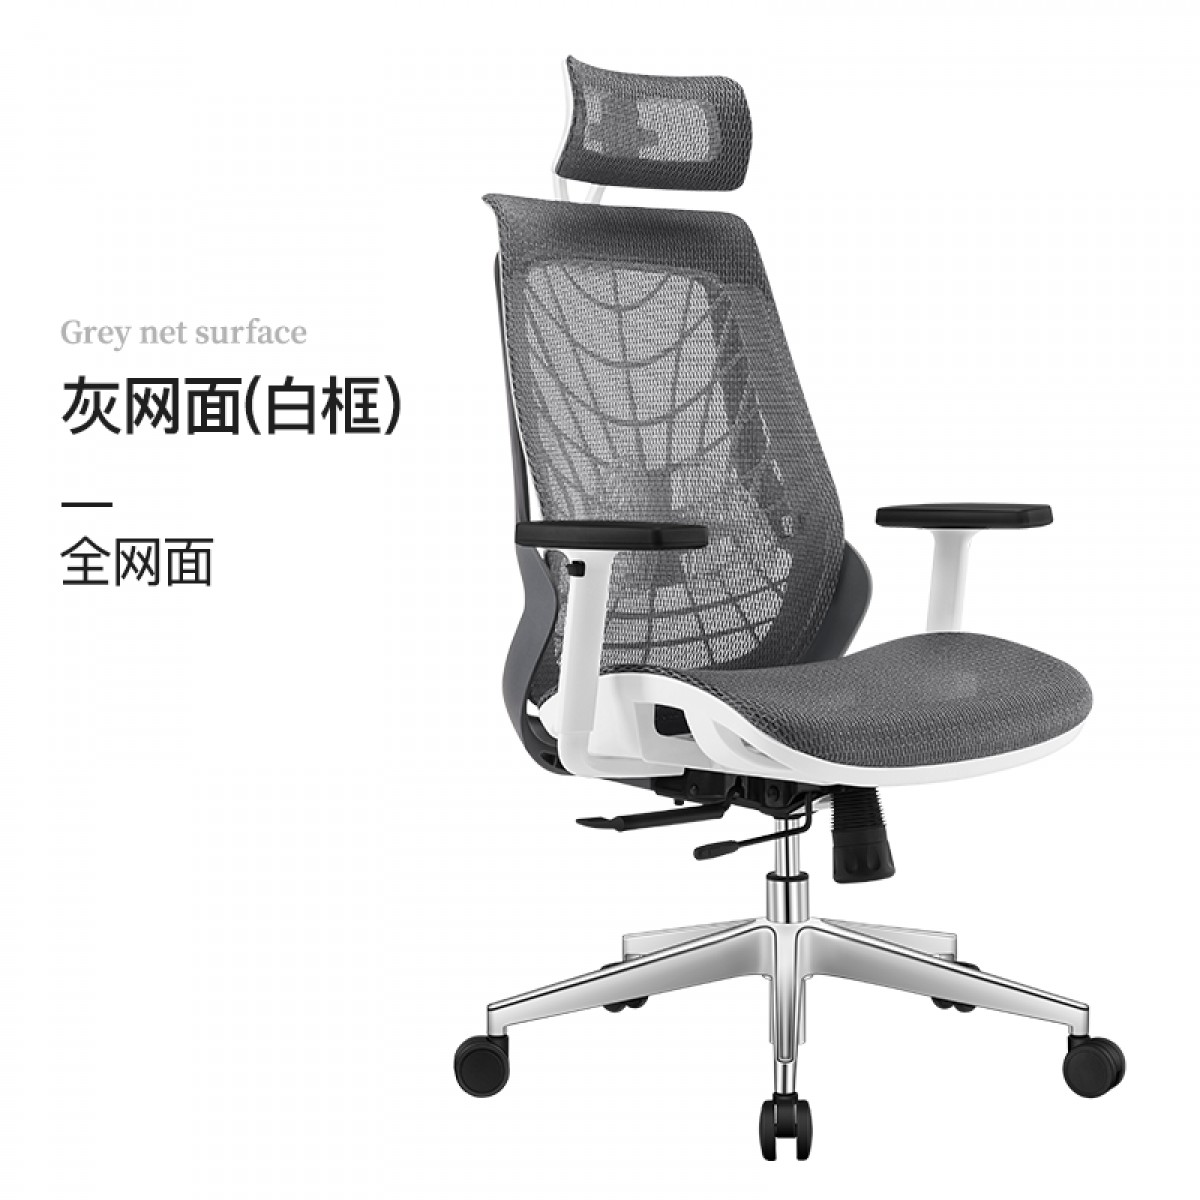 习格人体工学椅工程学电脑椅家用办公椅老板椅可躺舒适电竞椅游戏椅 双腰托人体工学椅 可双向移动坐垫